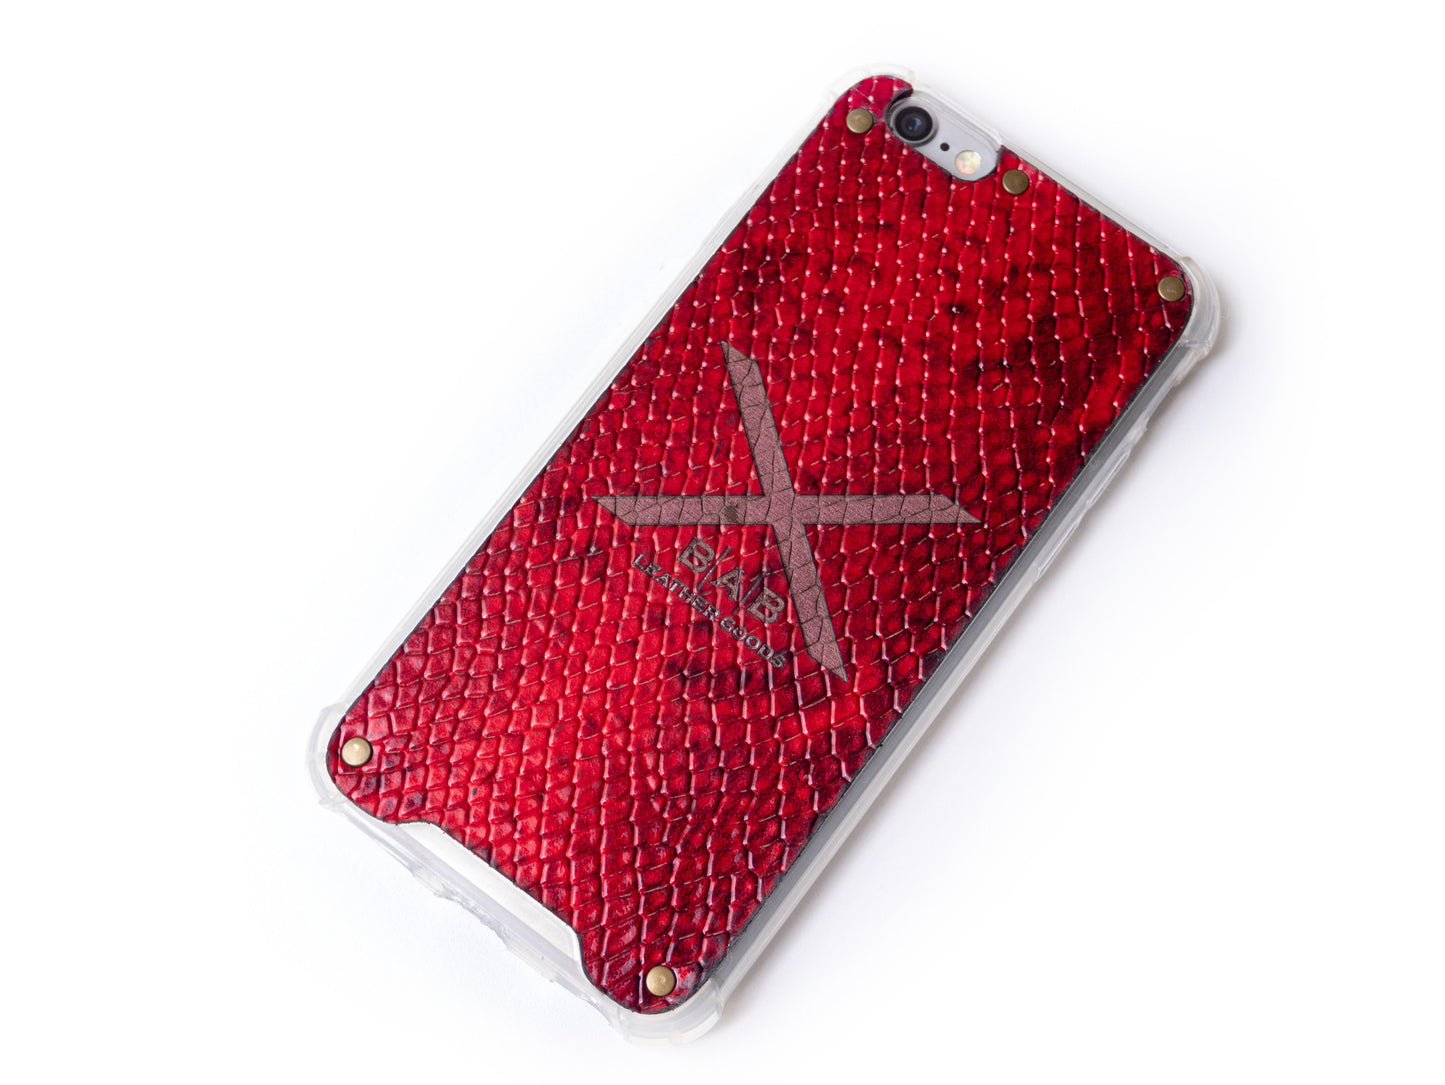 Funda para iPhone de Cuero Genuino Charol Python Rojo Texturizado cortado y grabado con láser, 5 Remaches de Bronce.- F36